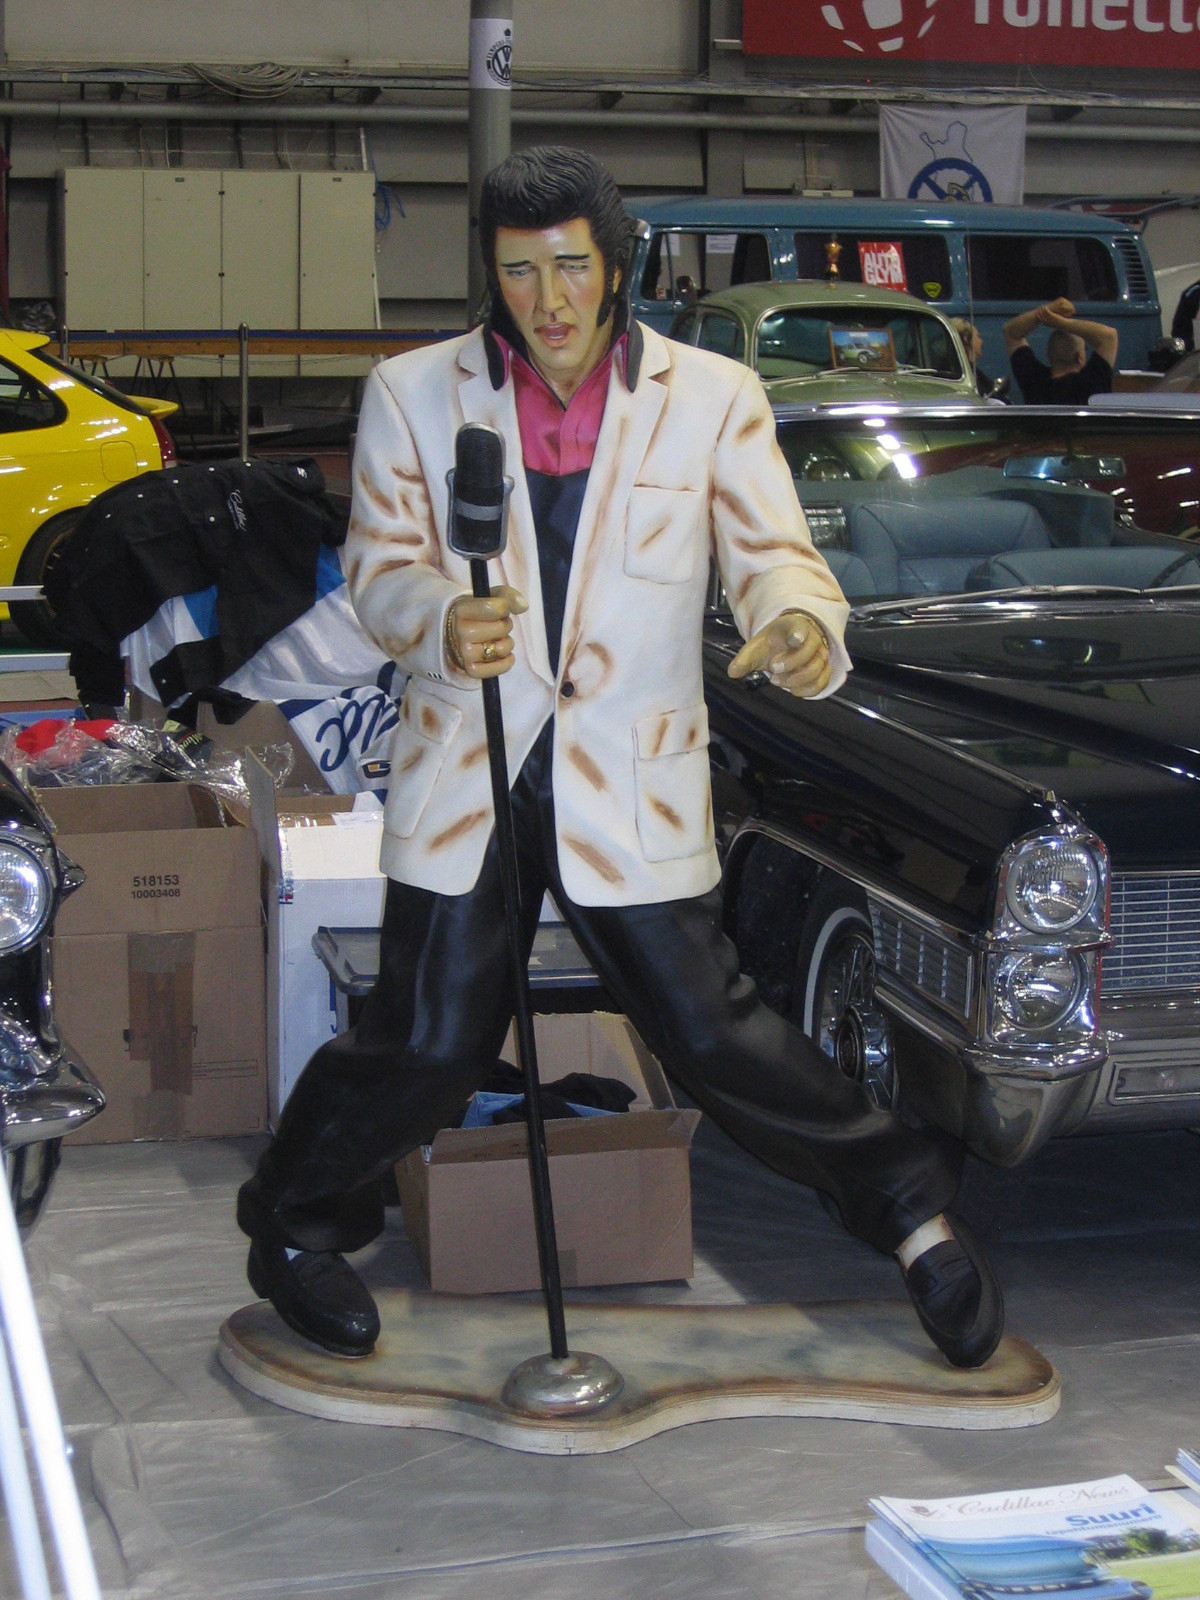 Hot Rod & Rock Show 2009, Elvis Presley